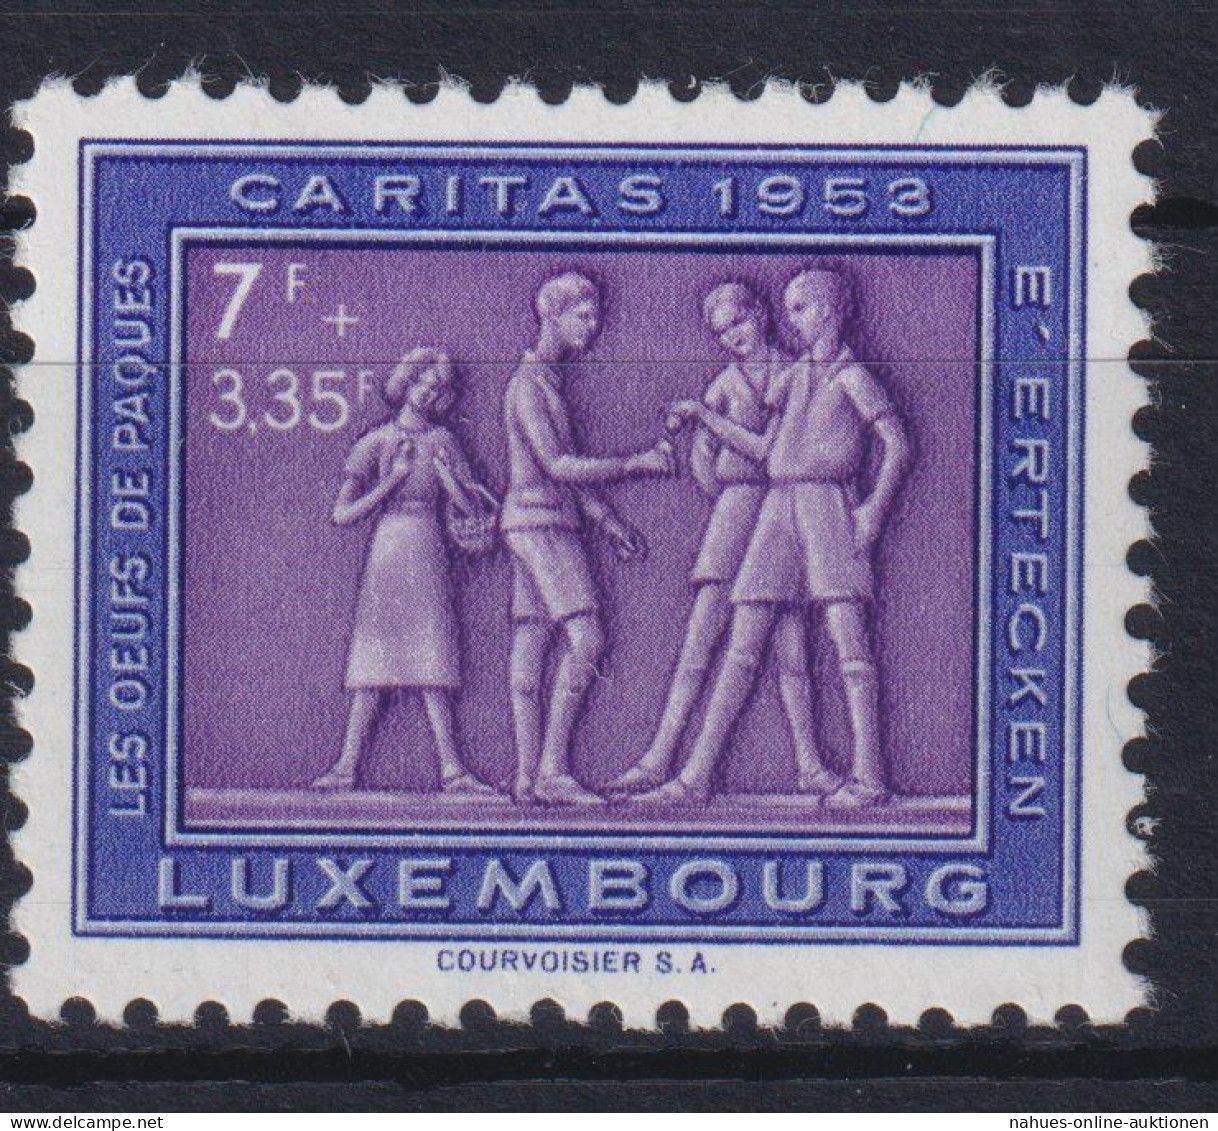 Luxemburg 522 Brauchtum Postfrisch 1953 - Covers & Documents